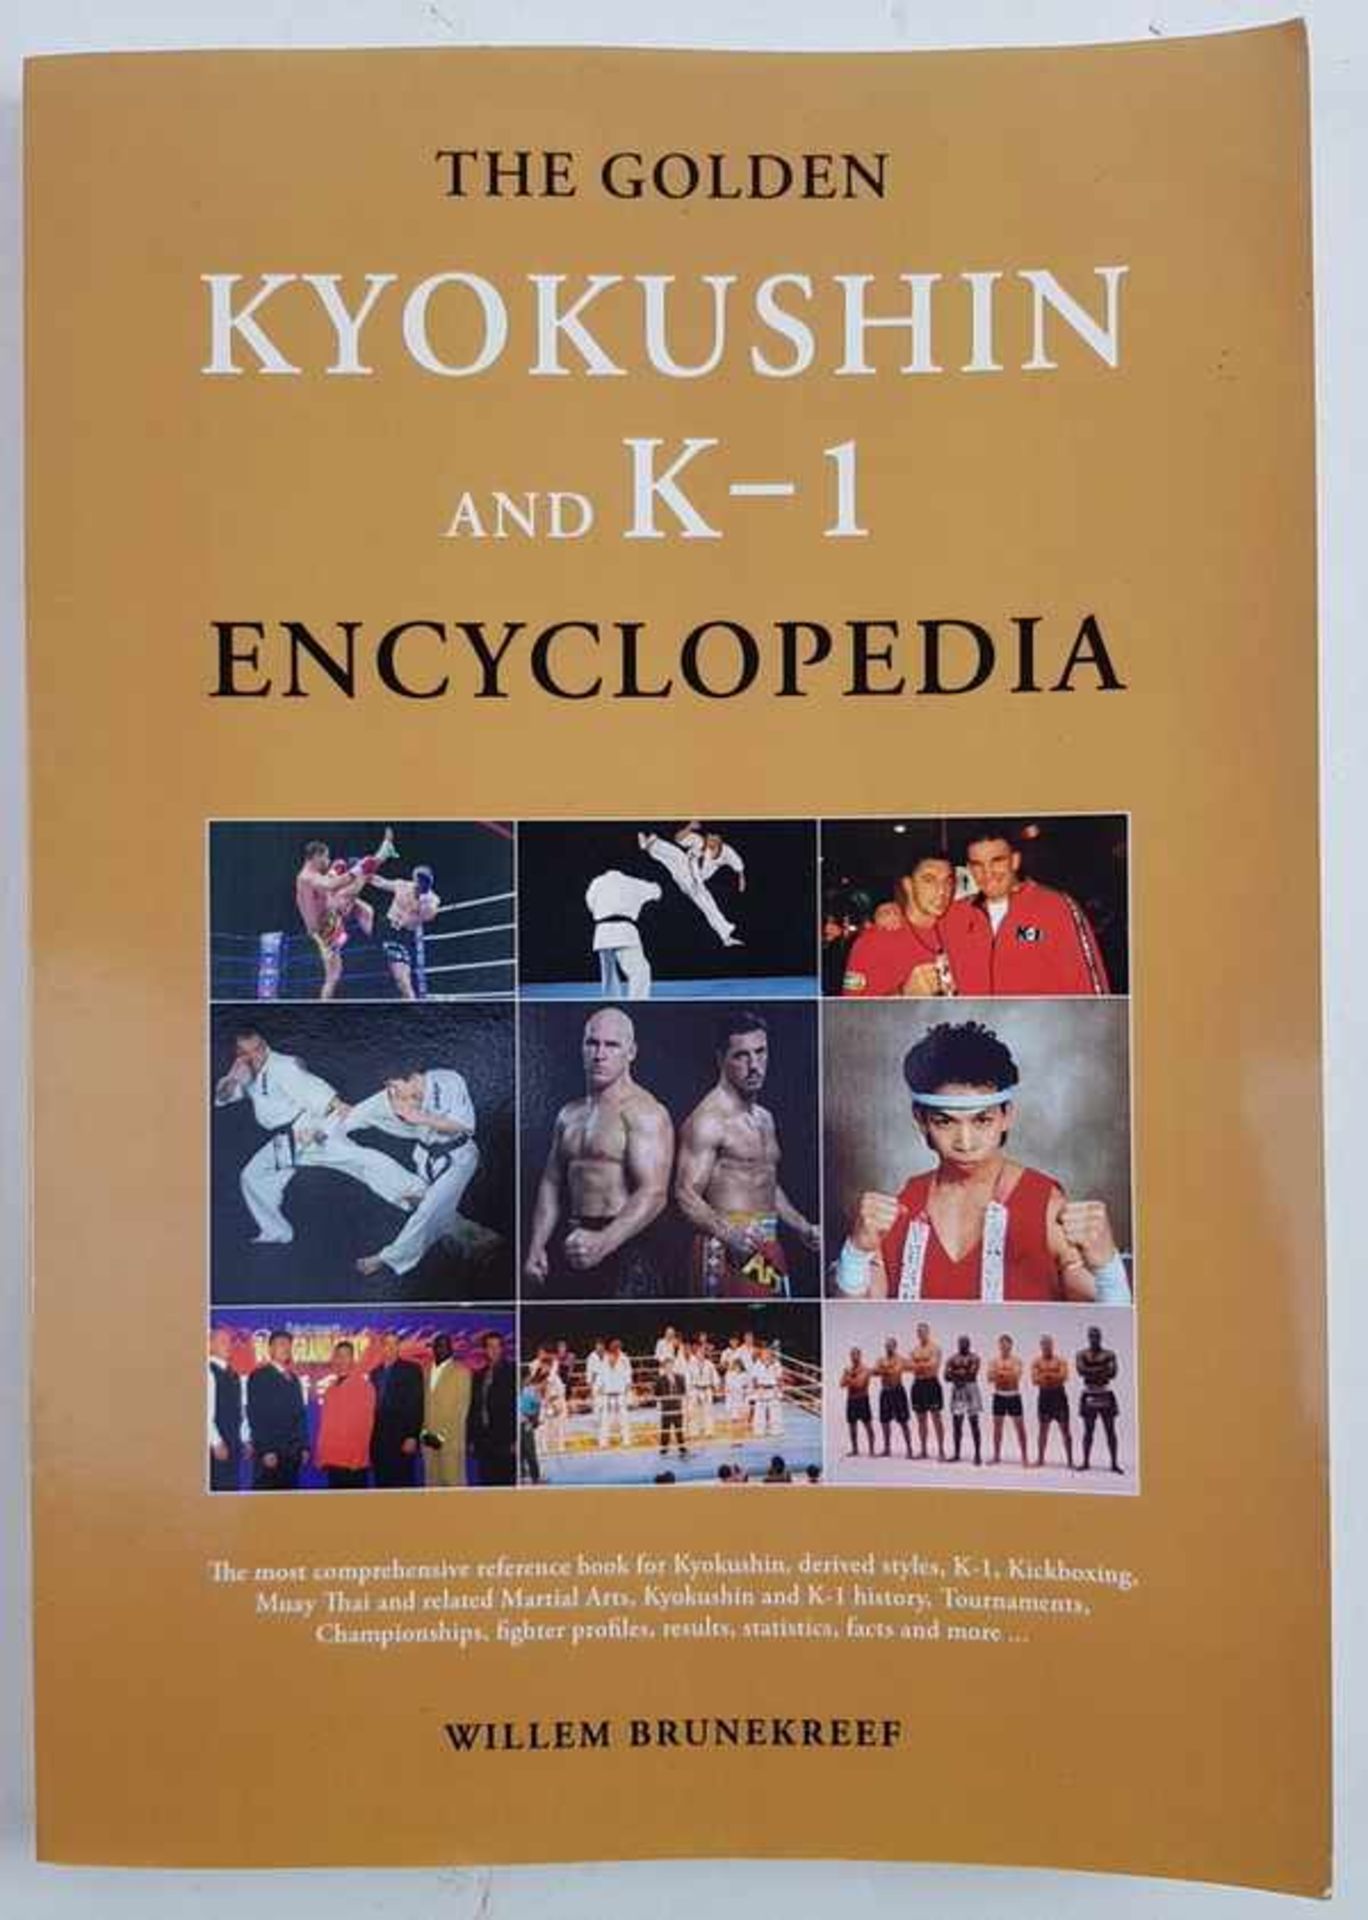 (Boeken) (Sport) Gesigneerd: The Golden Kyokushin and K-1 EncyclopediaWillem Brunekreef - The Golden